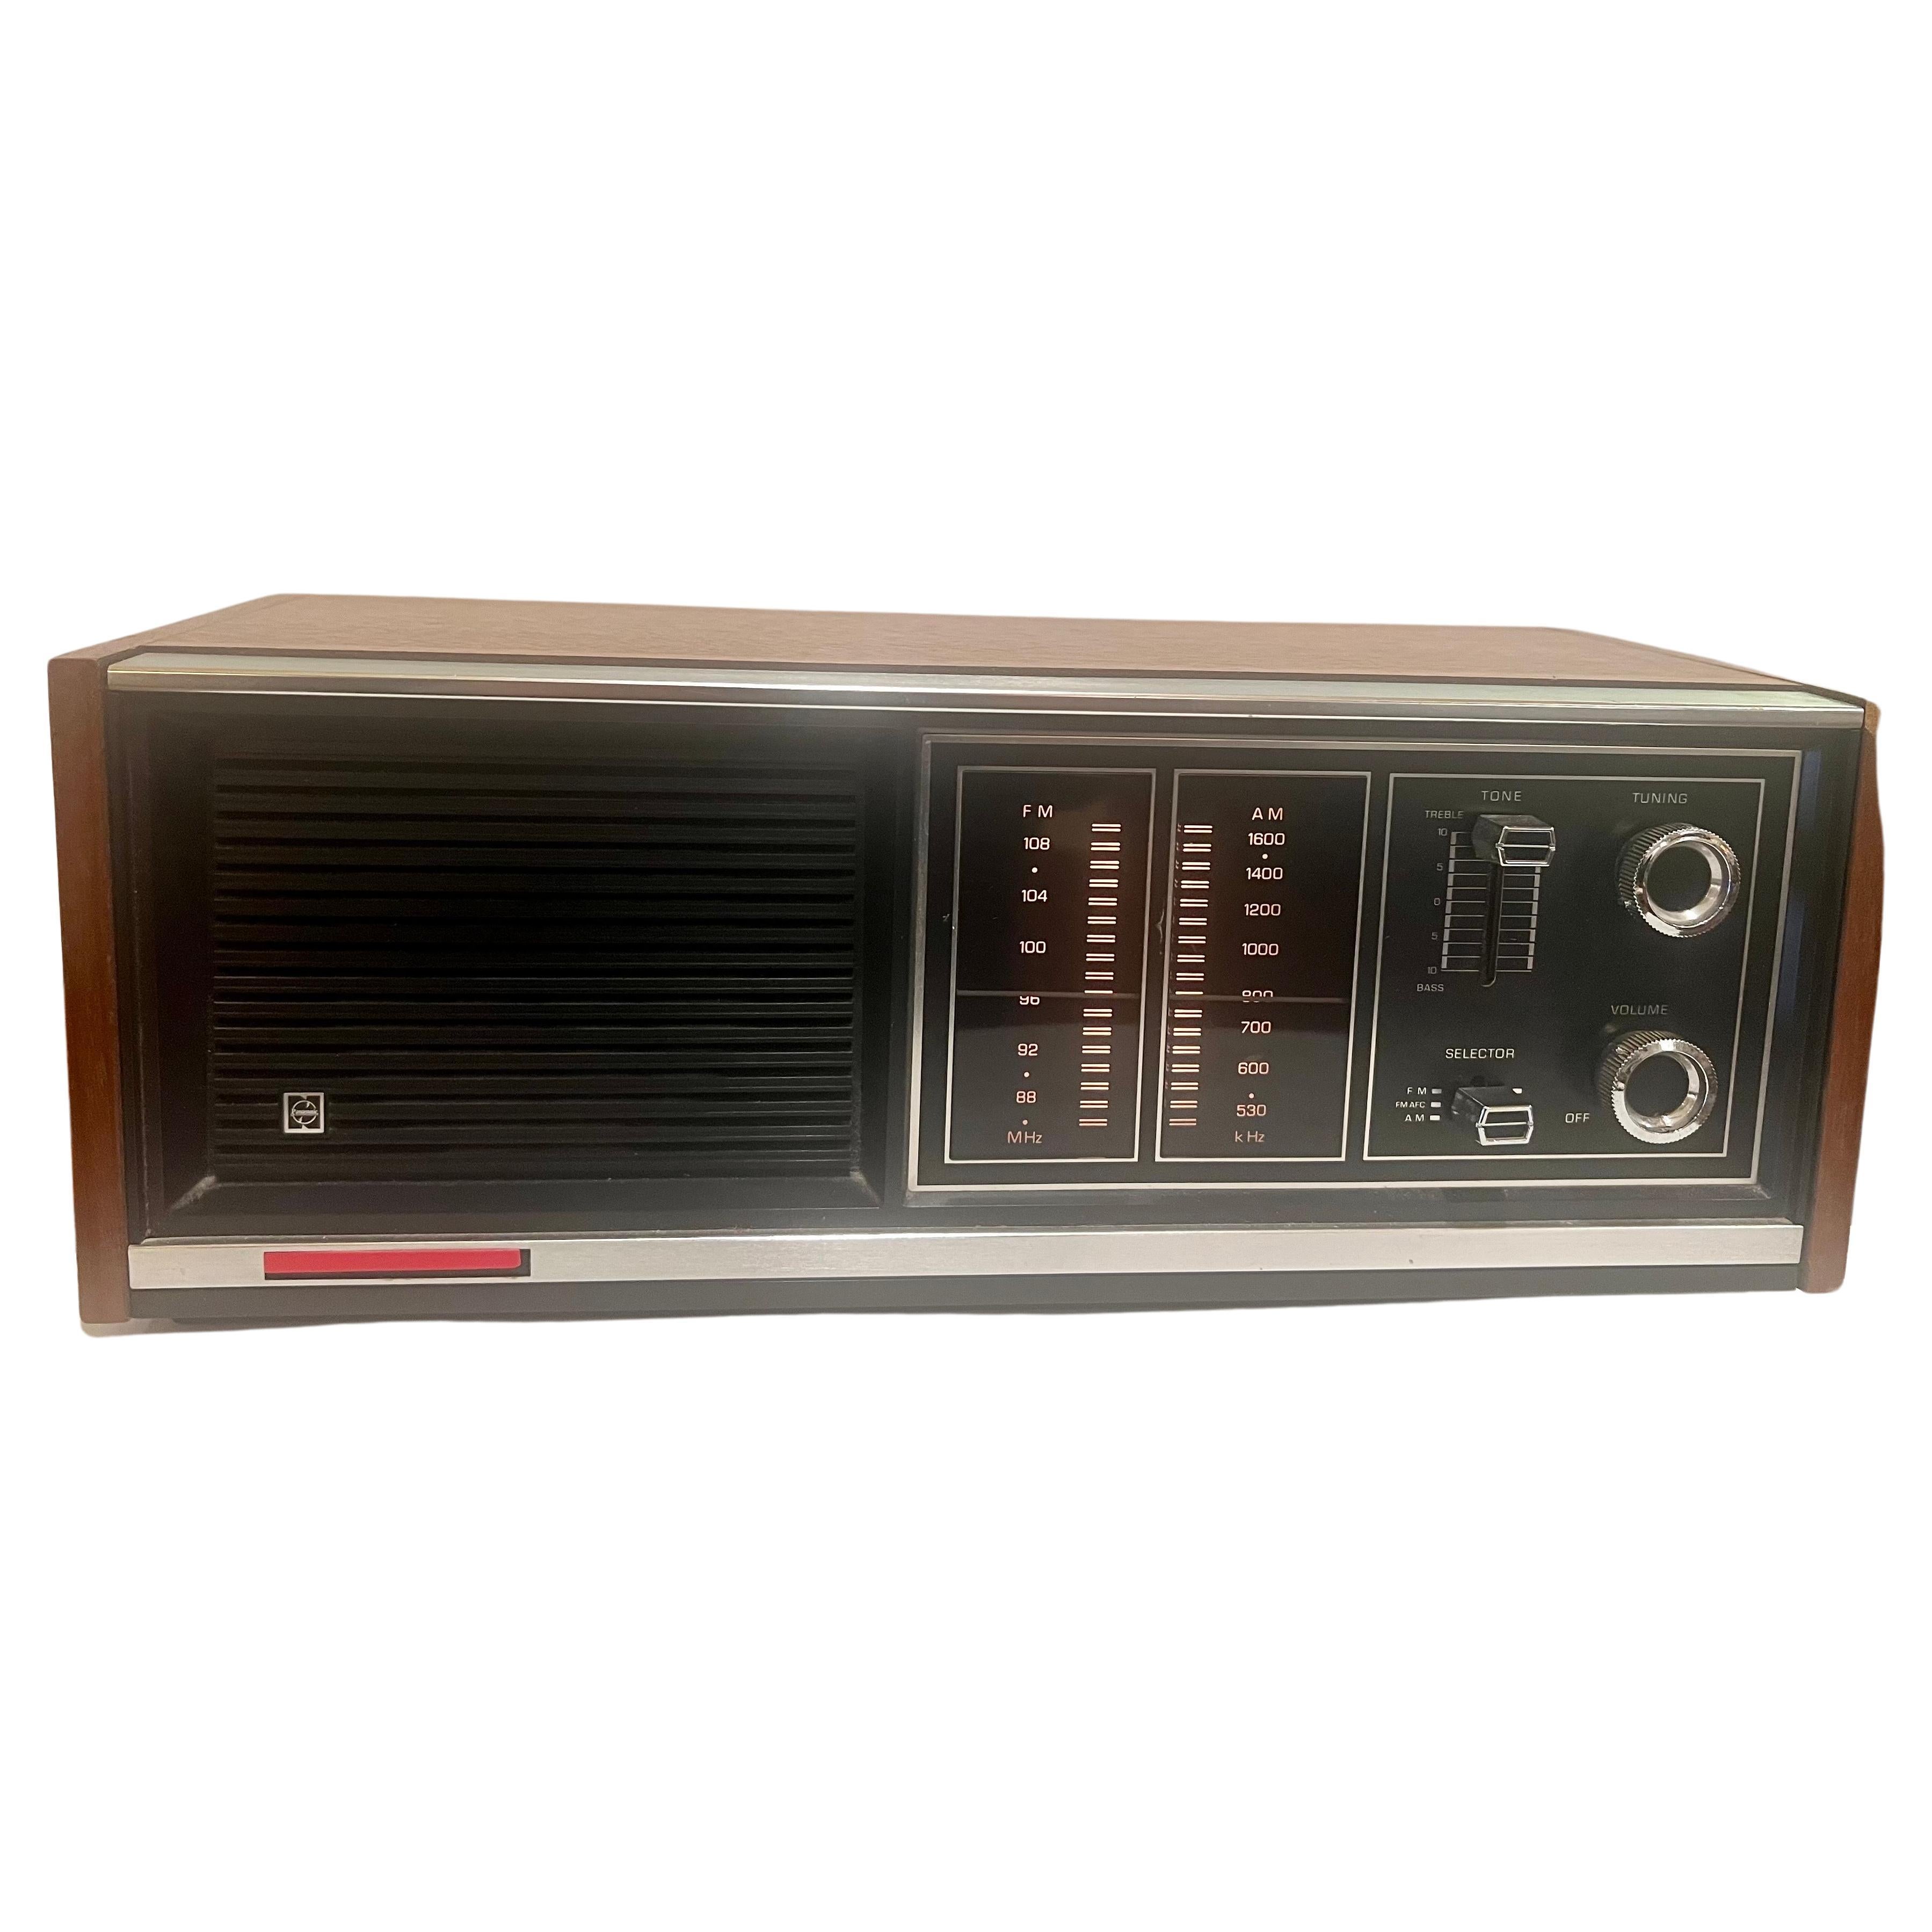 Cool in funktionierendem Zustand Panasonic Modell RE-7371 AM/FM Radio circa 1970's großen Zustand schön Teakholz Fall mit Chrom-Akzenten .